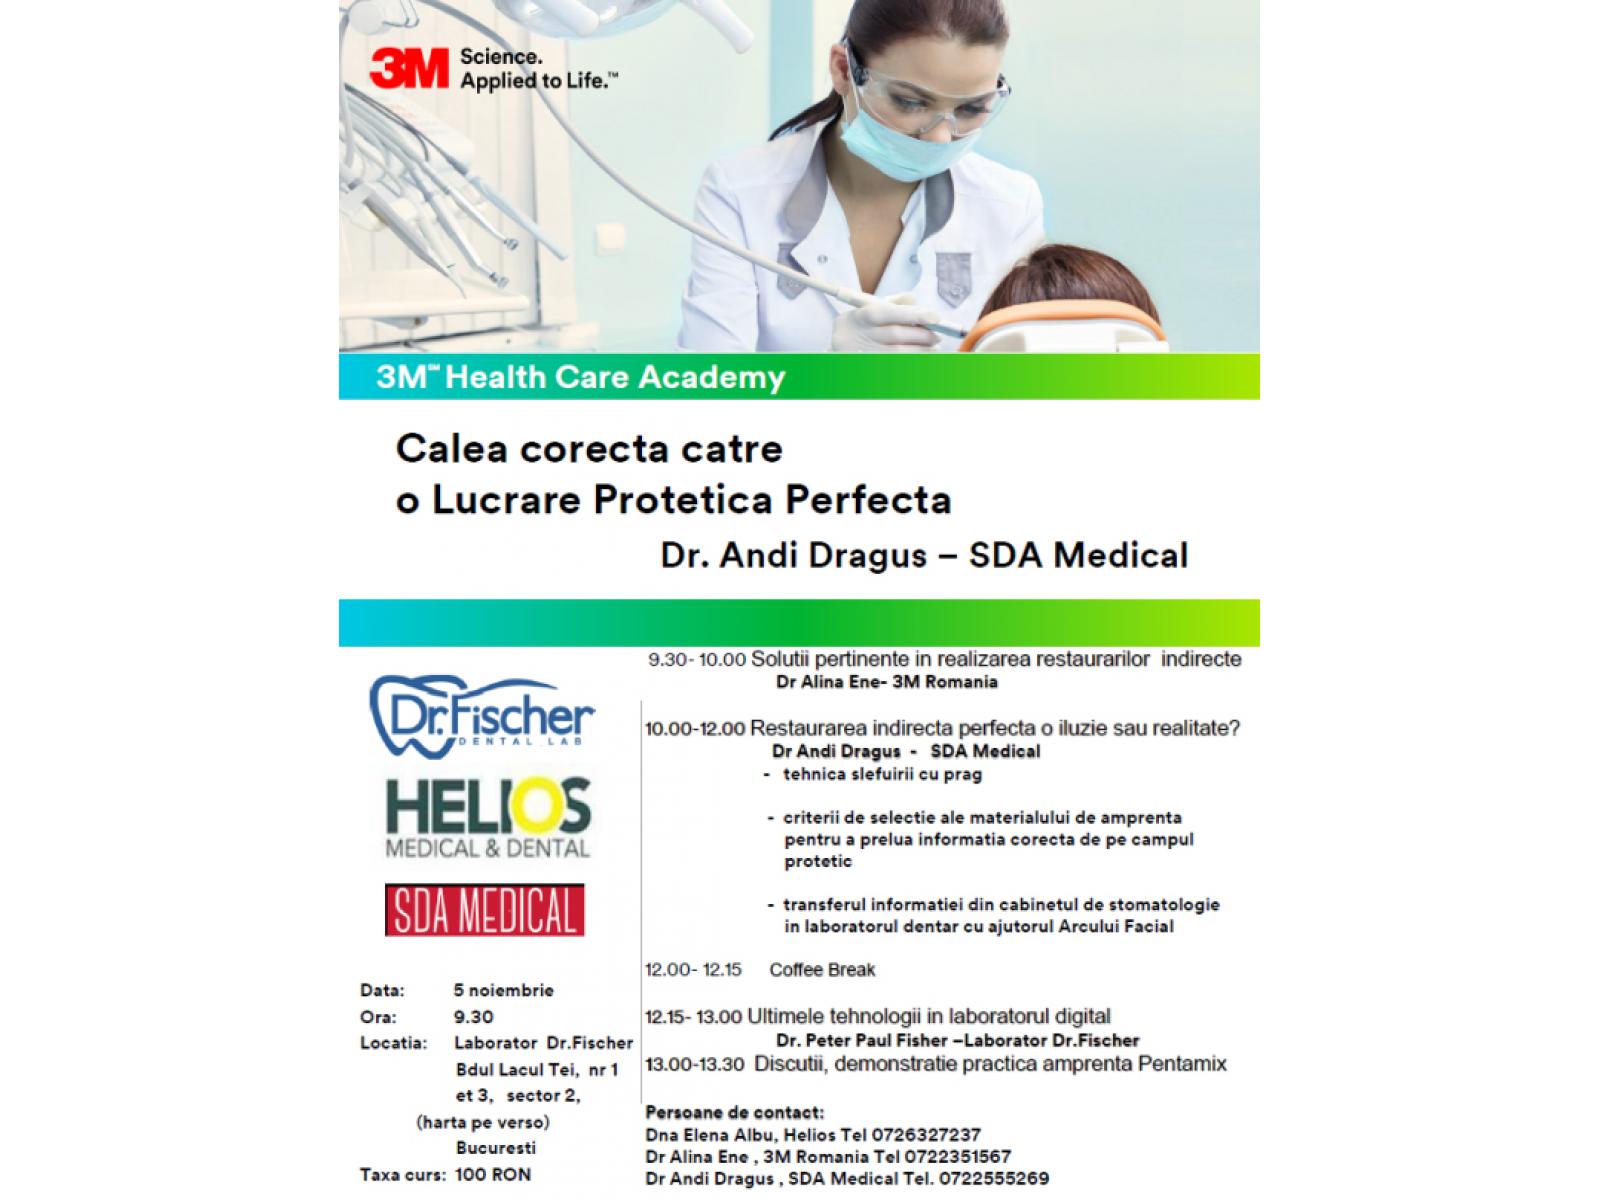 Clinica Dr. Dragus - event1_R.jpg